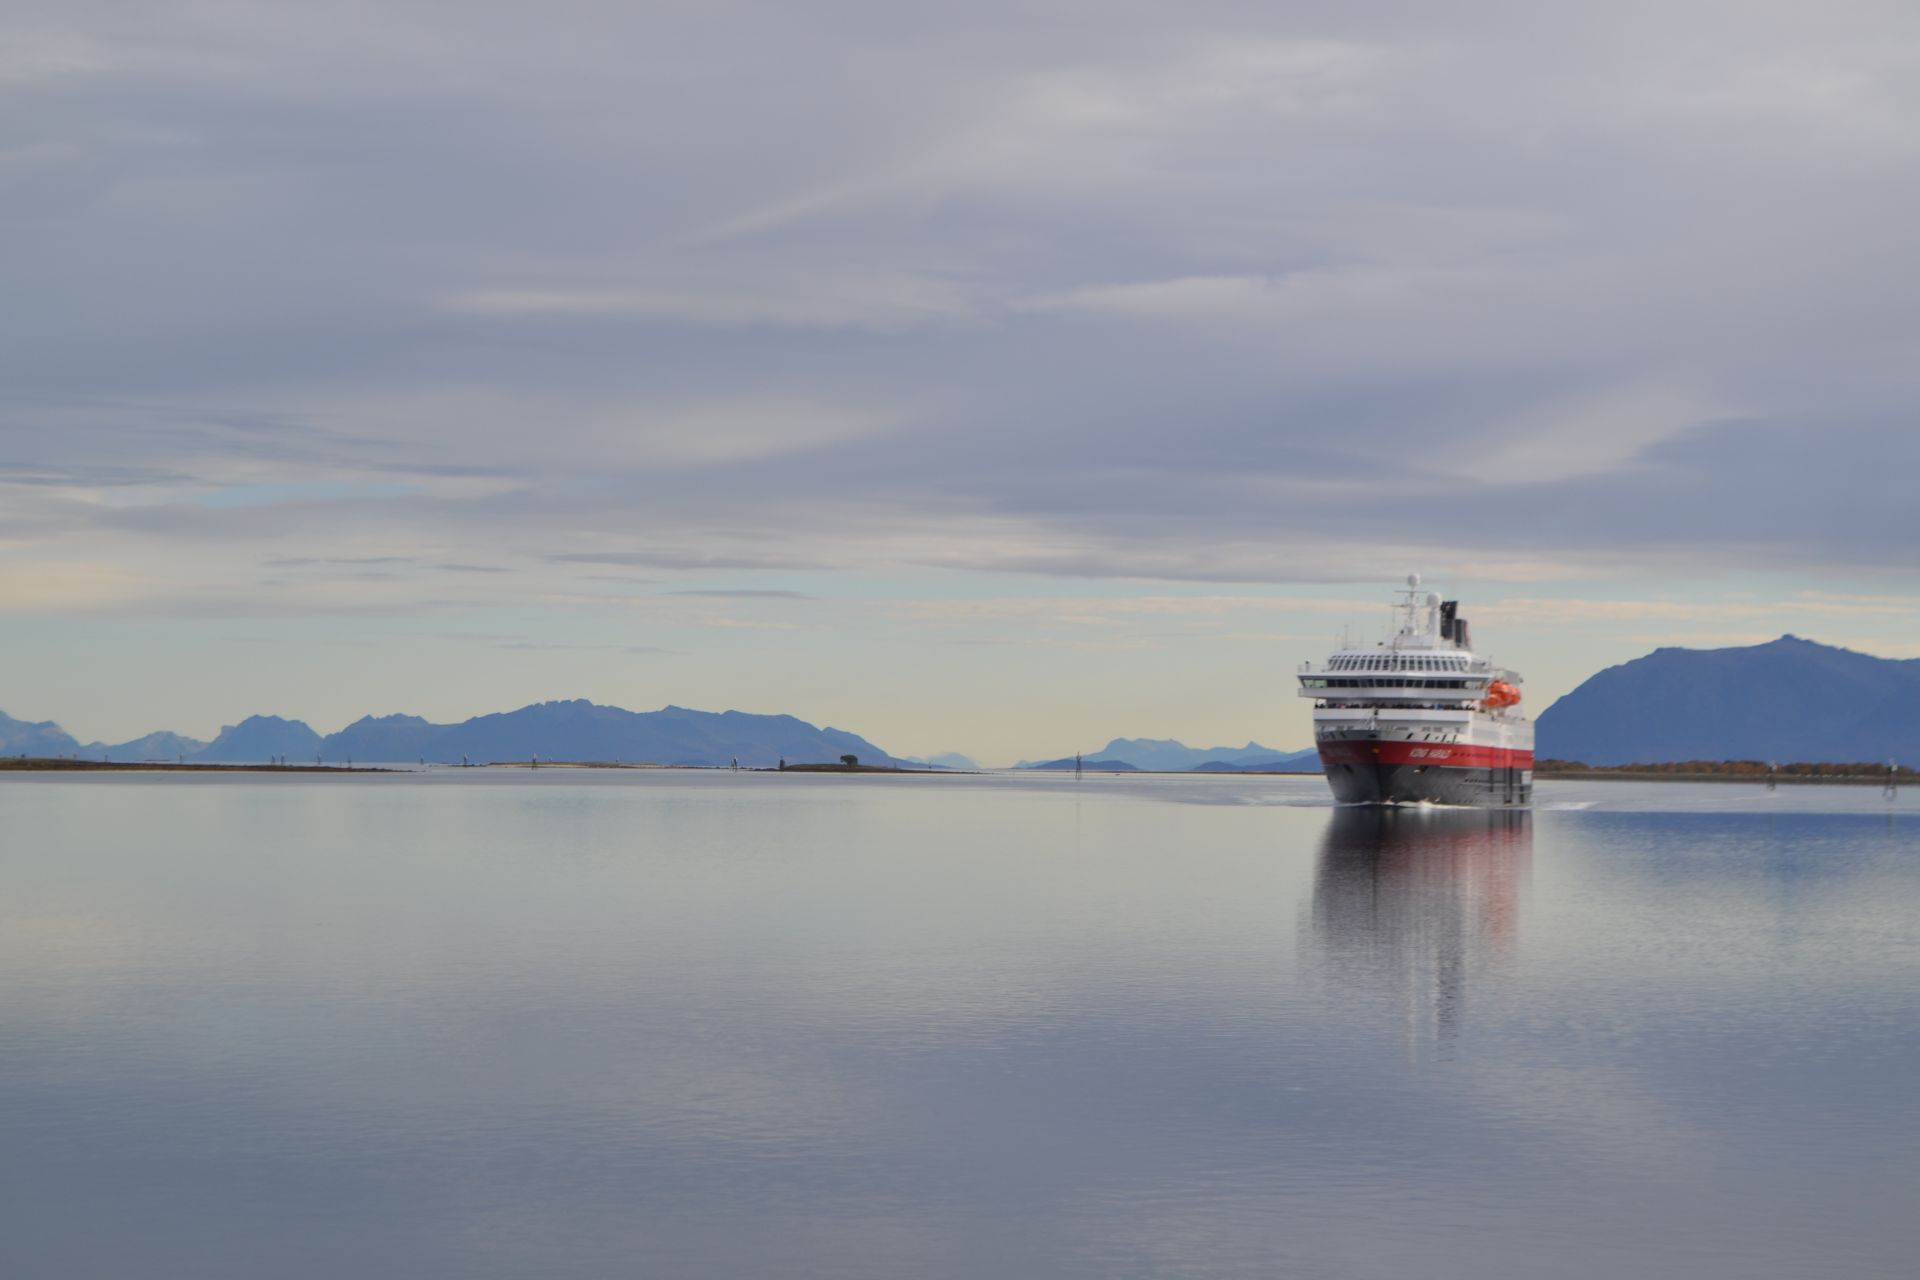 Călătorie cu familia în Insulele Lofoten din Norvegia